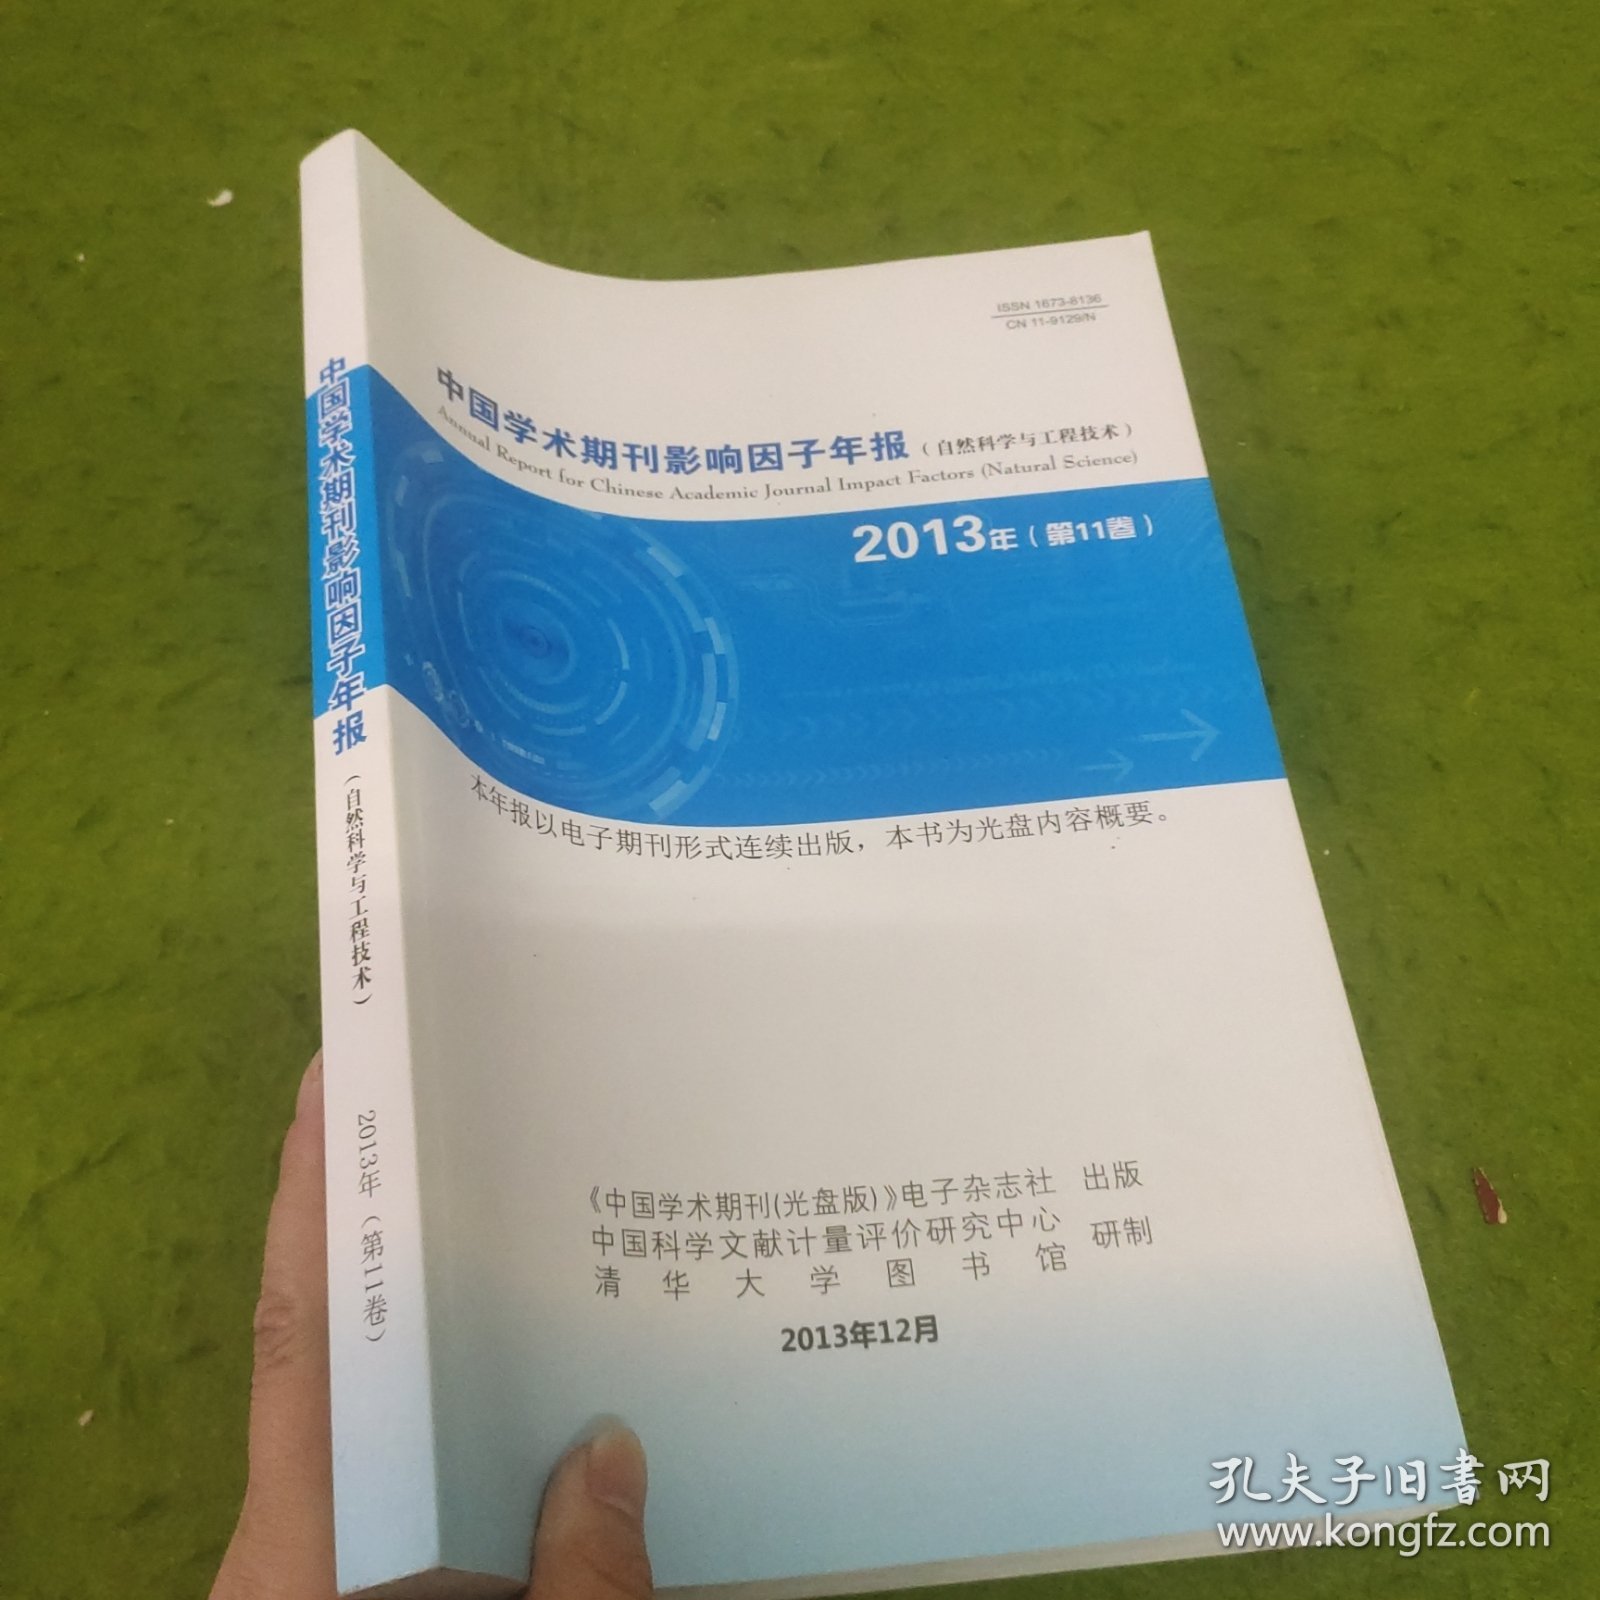 中国学术期刊影响因子年报（自然科学与工程技术）2013年第11卷